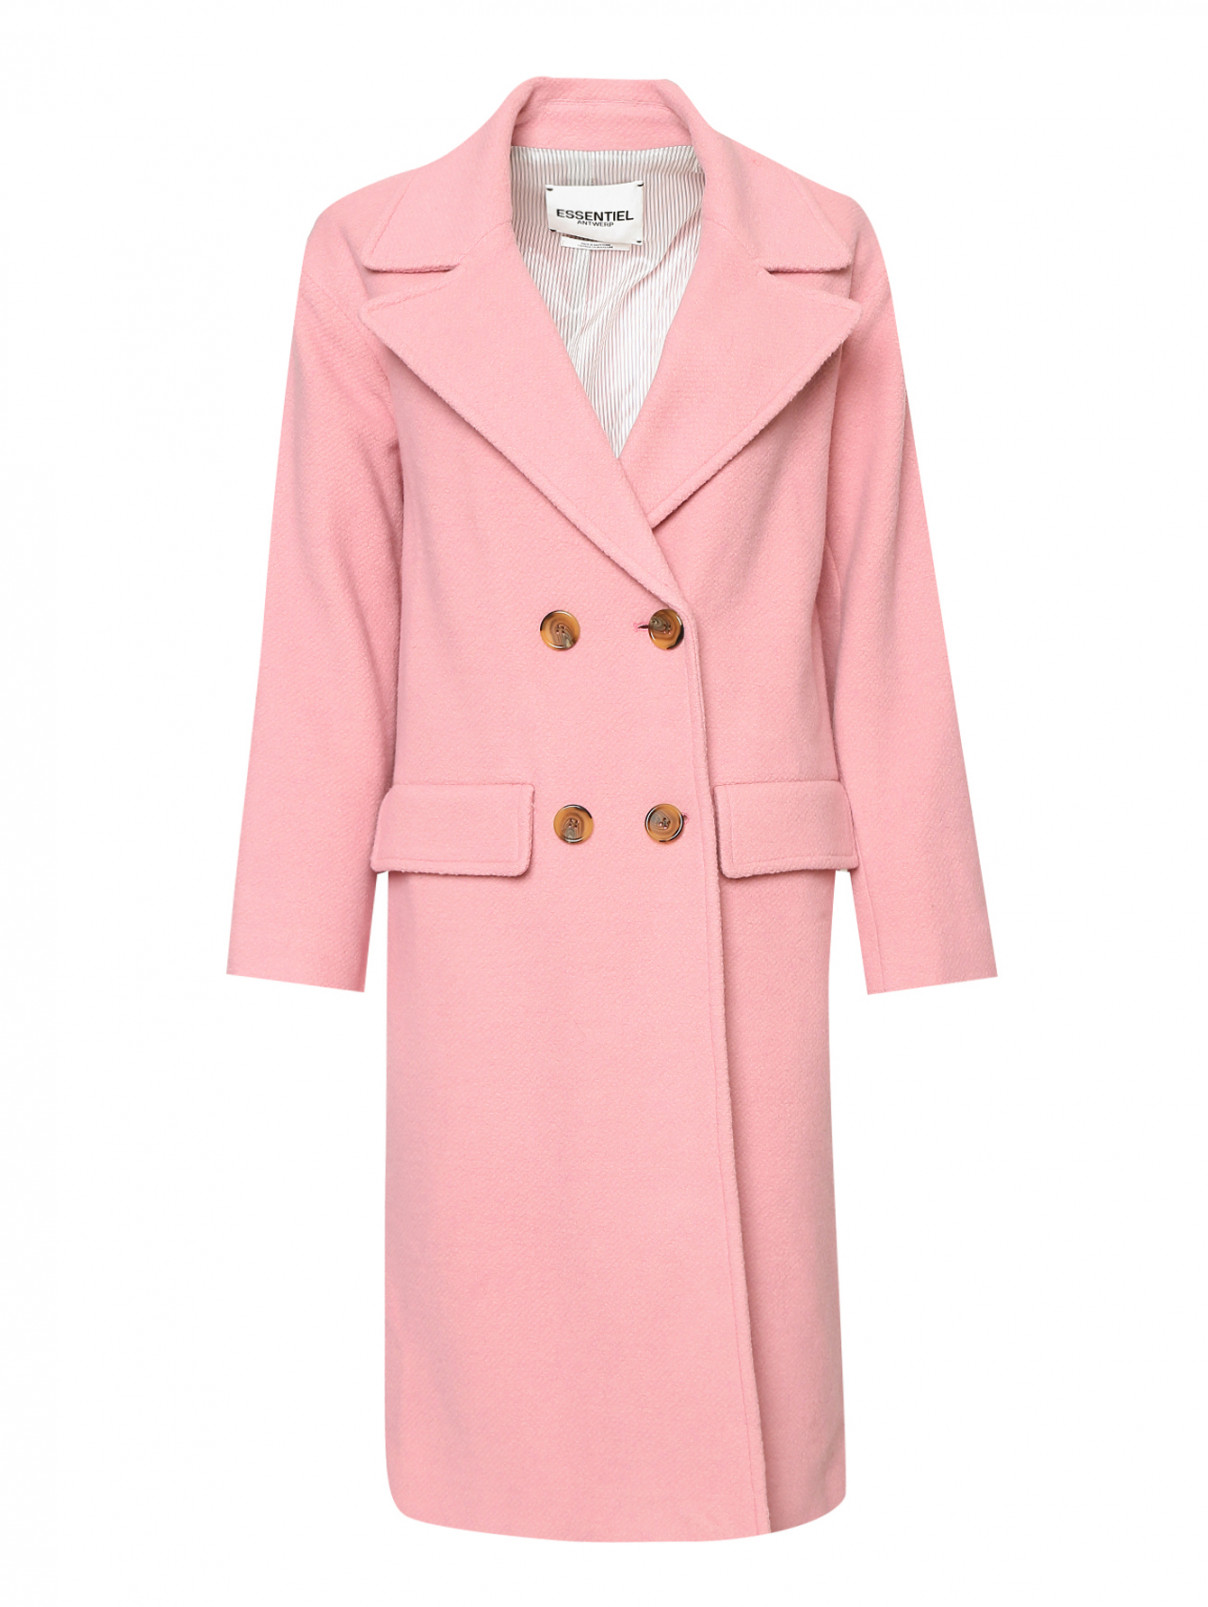 Пальто из шерсти двубортное Essentiel Antwerp  –  Общий вид  – Цвет:  Розовый